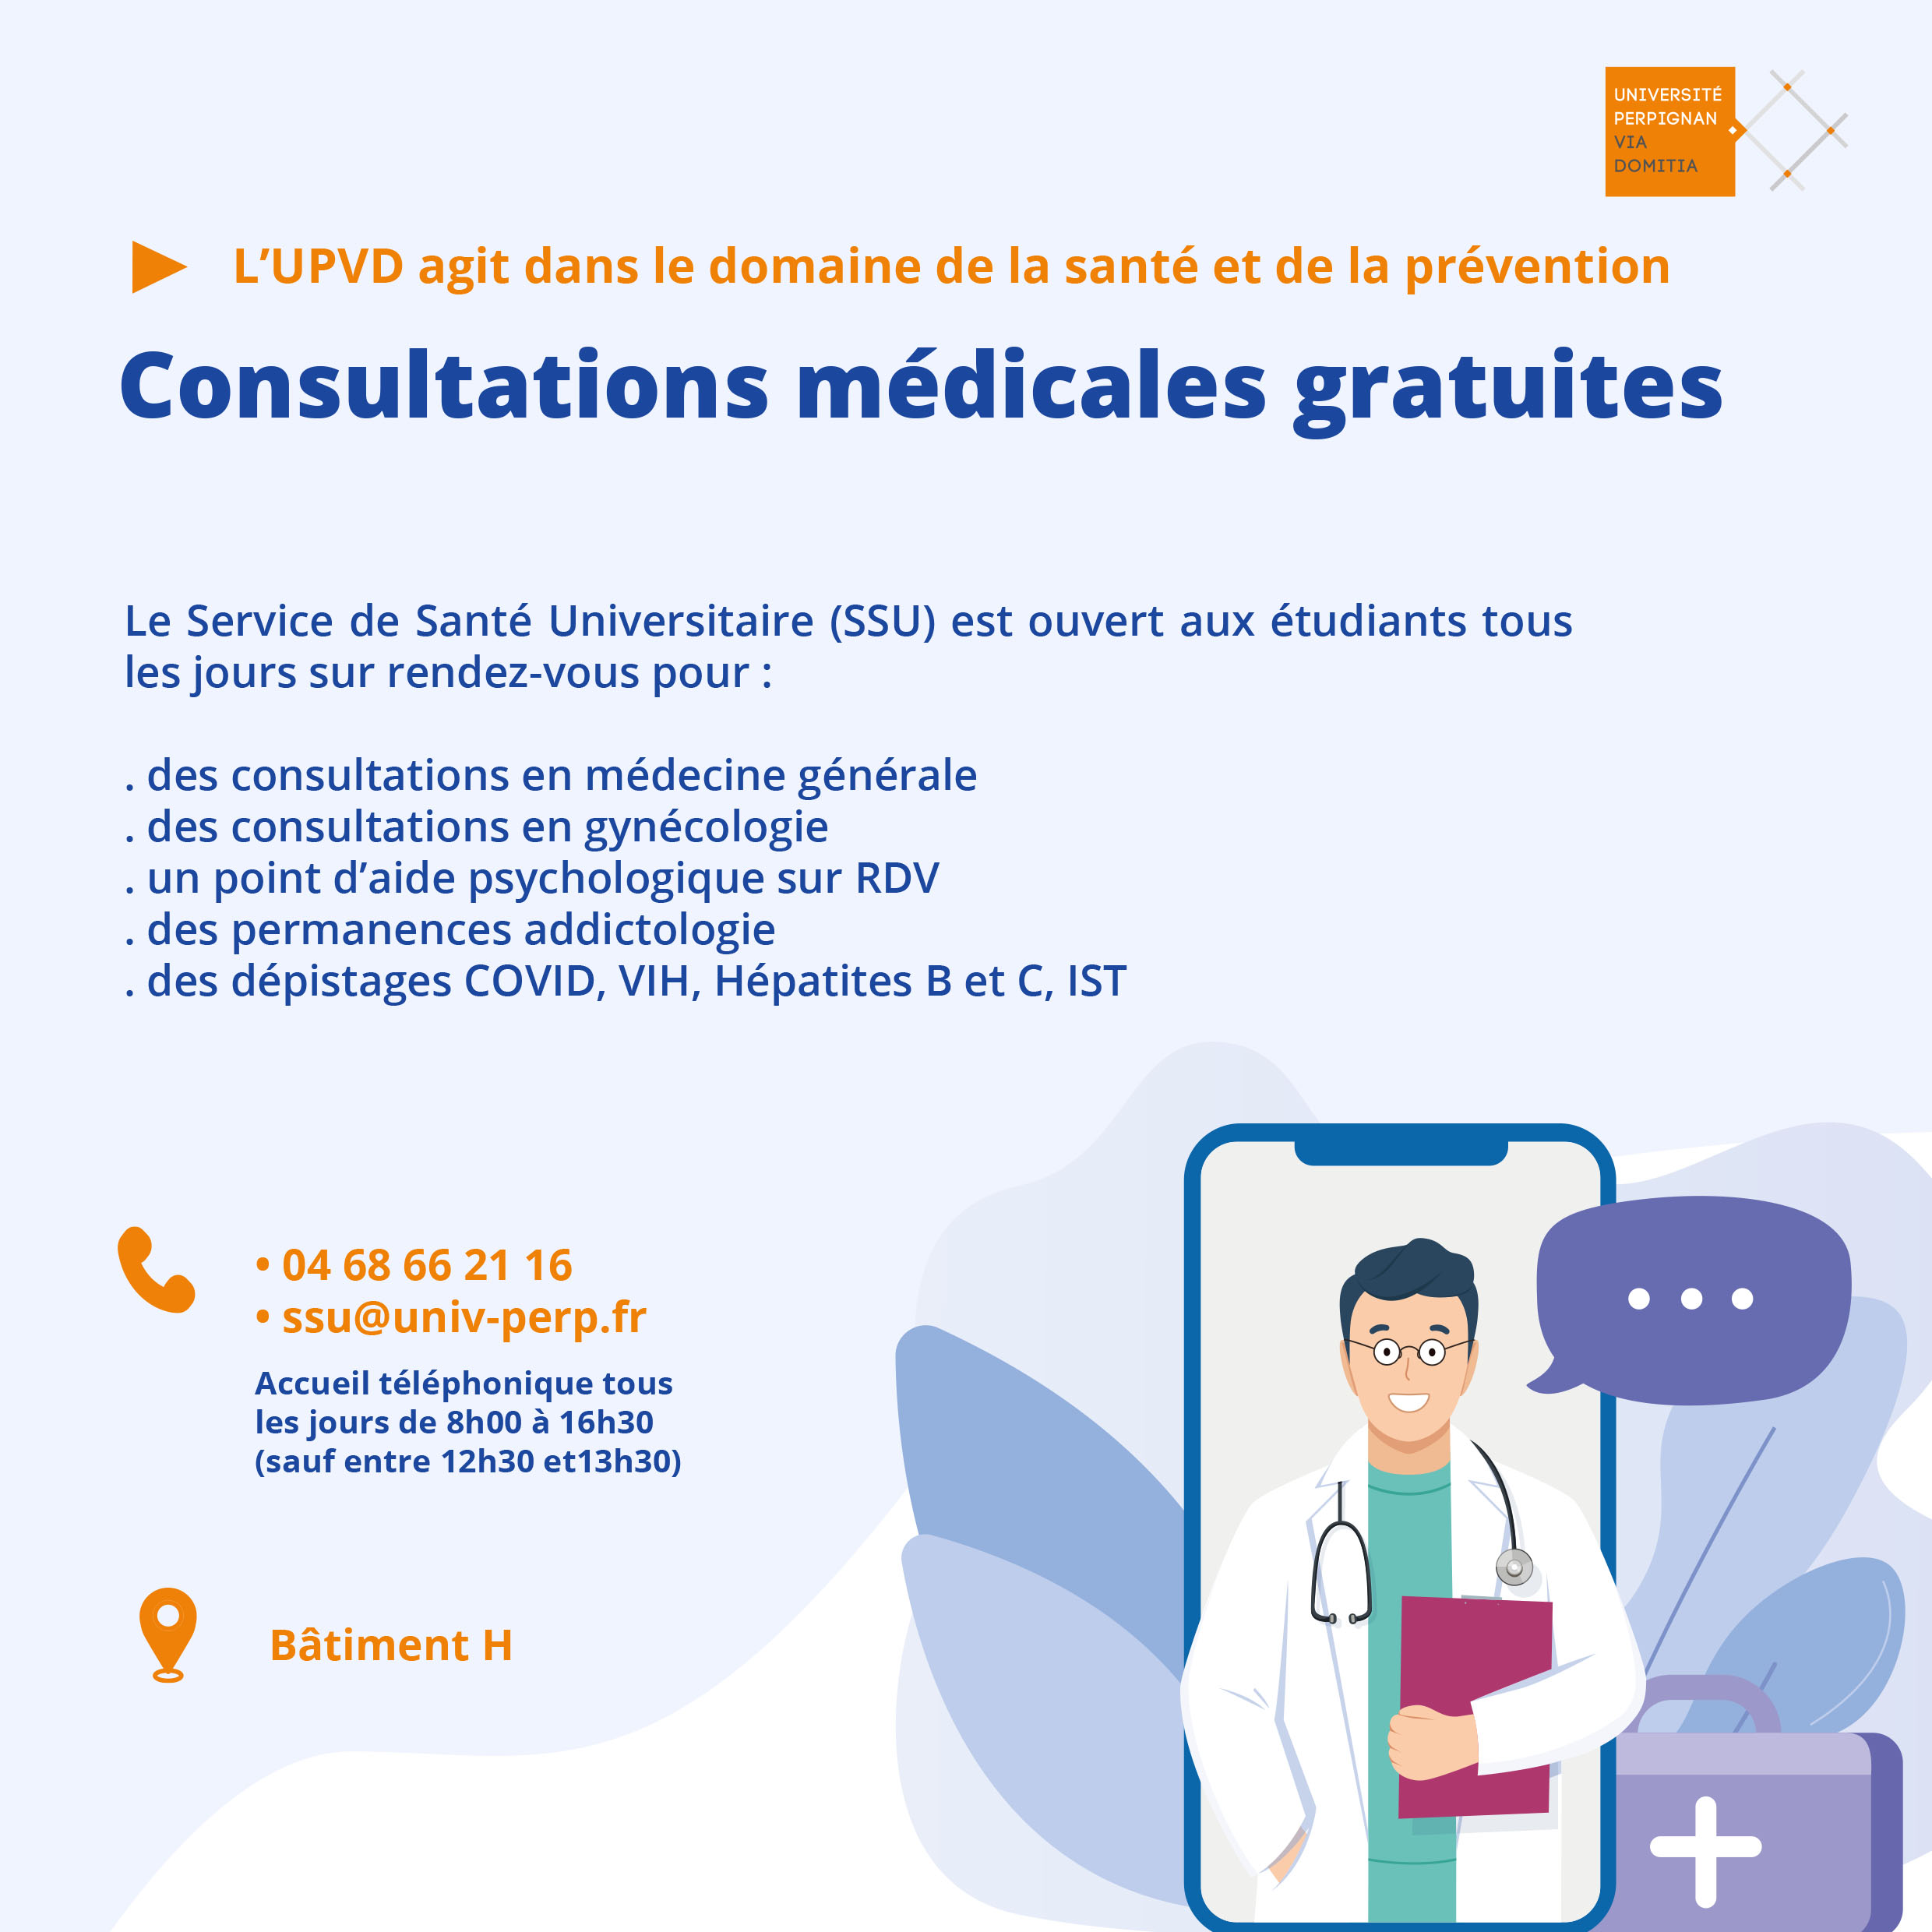 2. consultation medicales